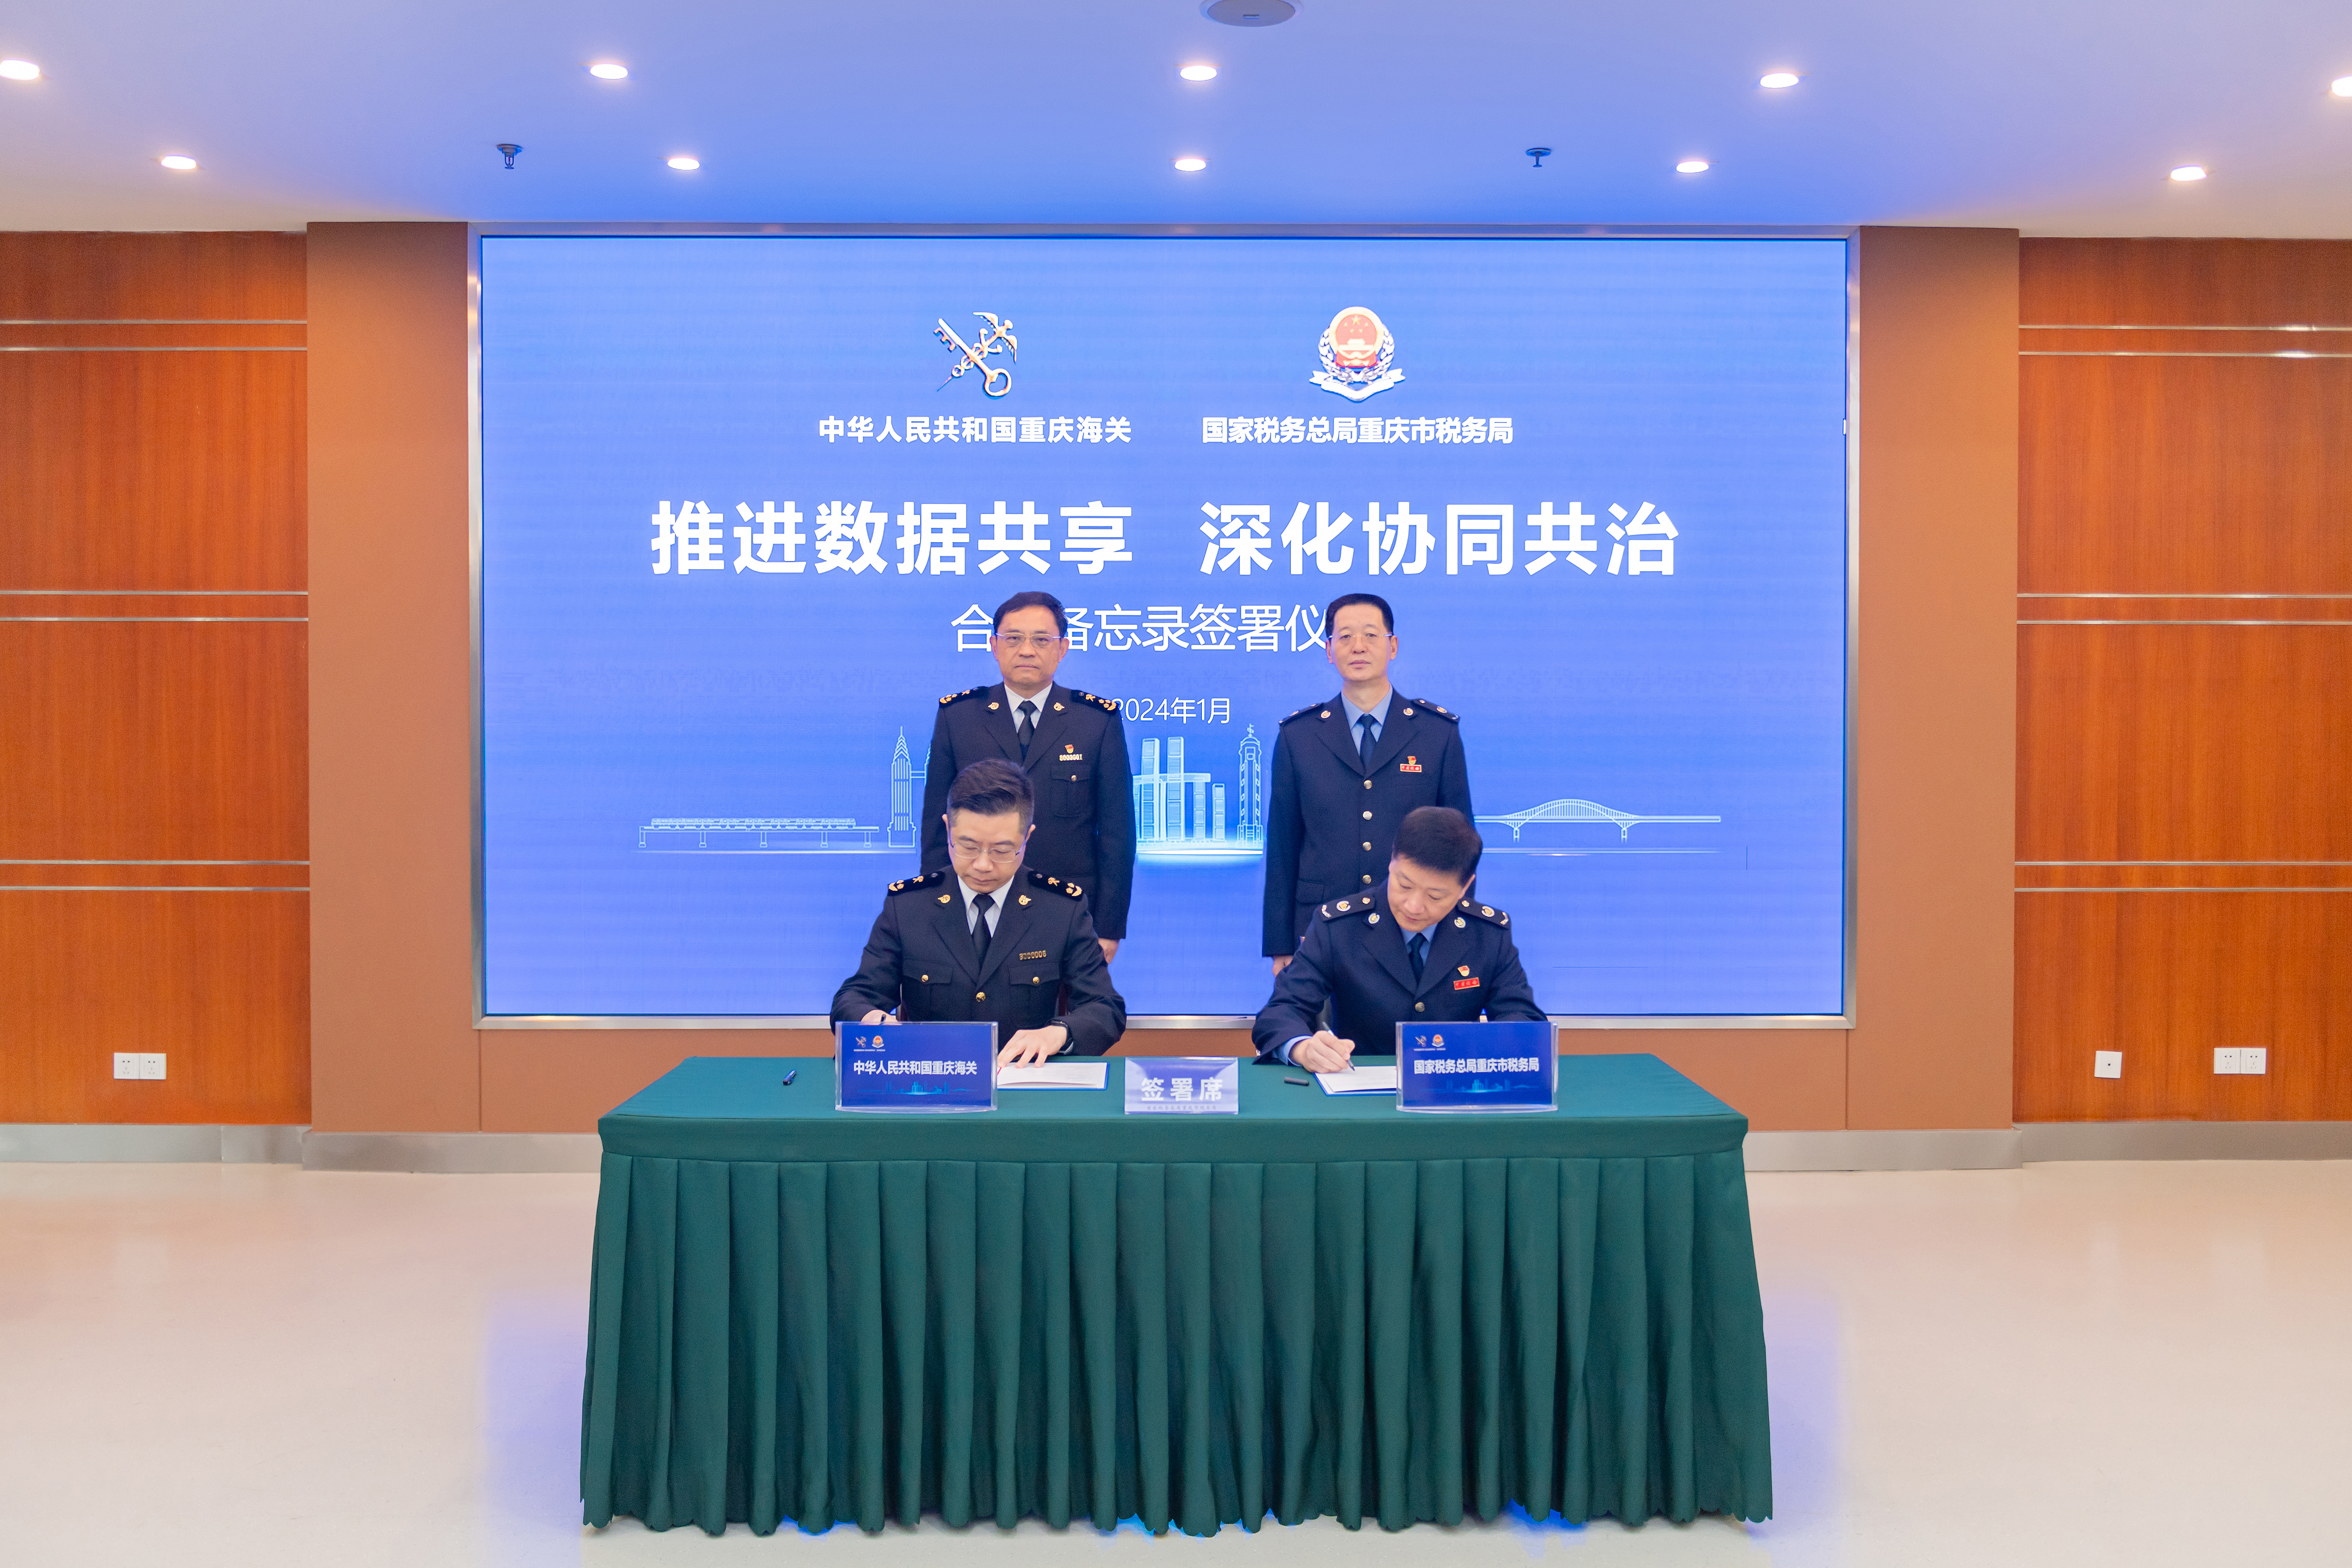 推进数据共享 深化协作共治 重庆市税务局与重庆海关签署合作备忘录